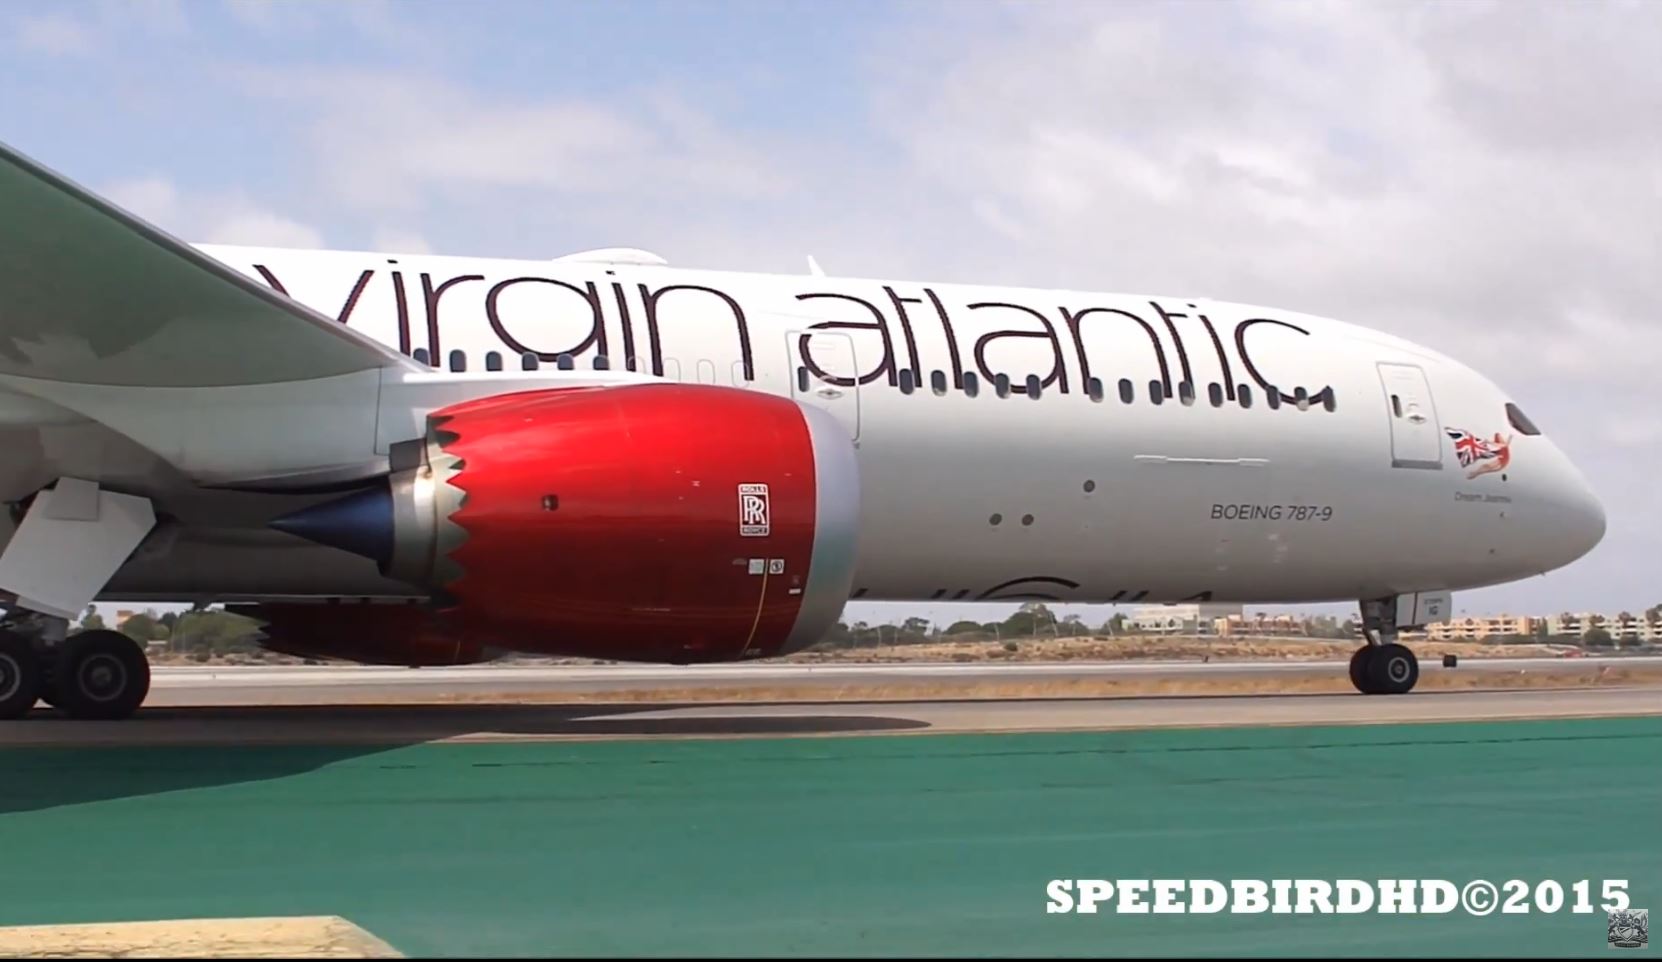 Virgin Atlantic Boeing 787-9 at Los Angeles International Airport